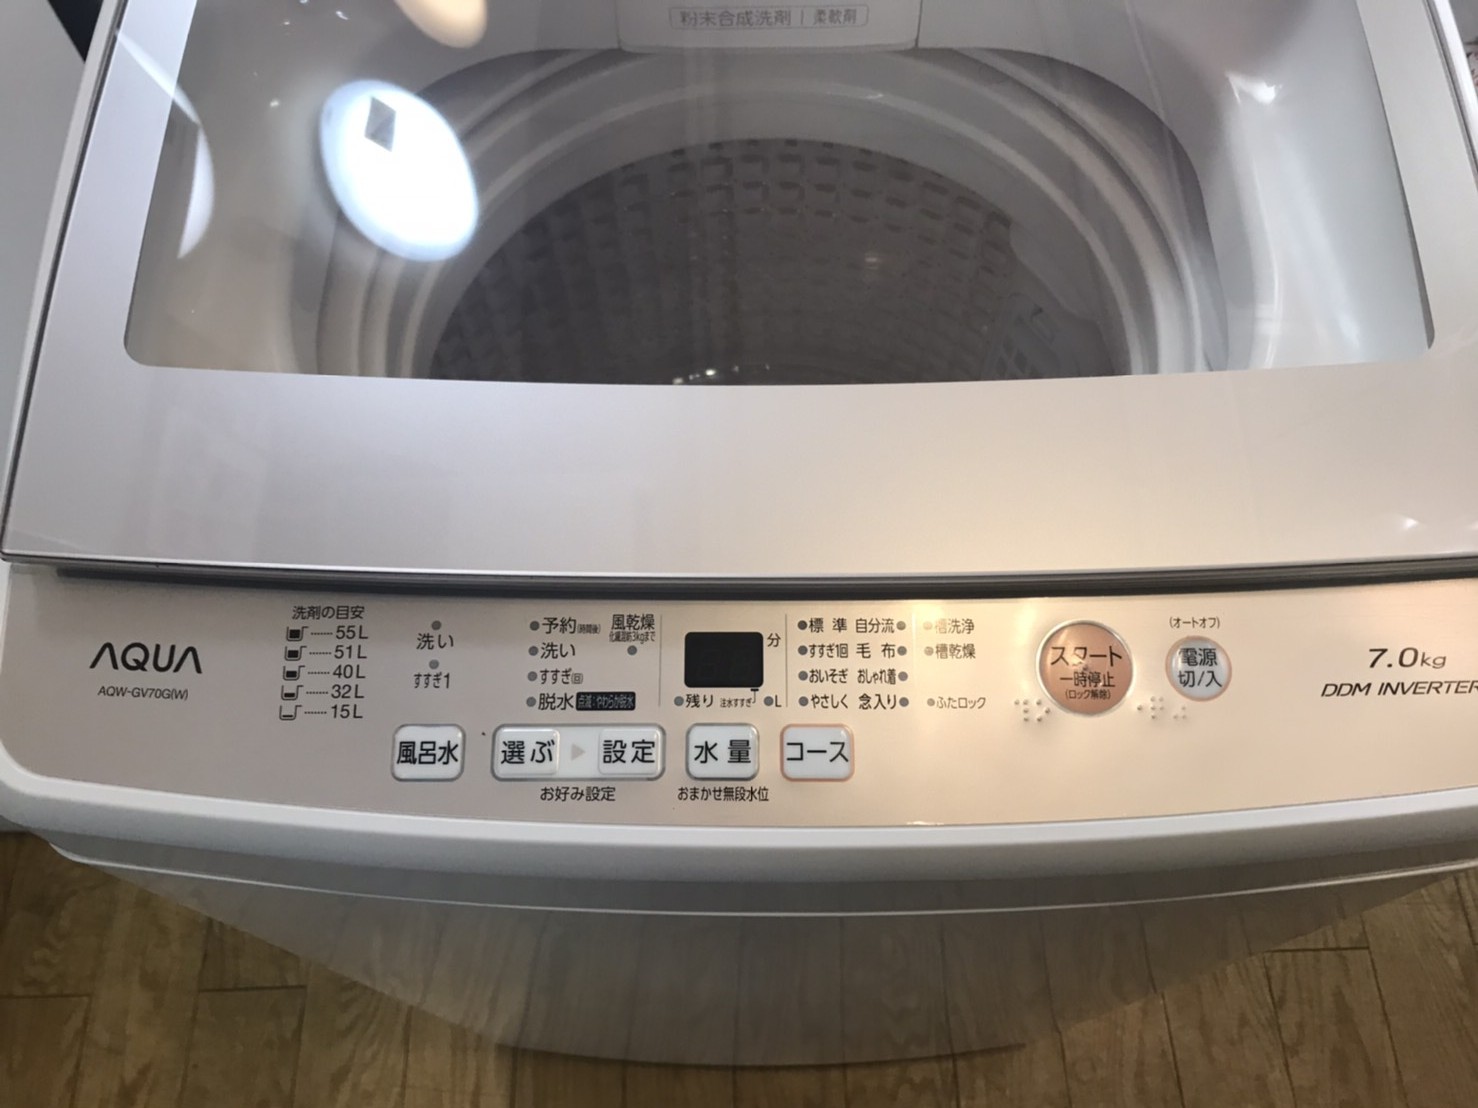 全自動洗濯機 AQUA AQW-GP70H(W) 2020年7月購入 - 洗濯機